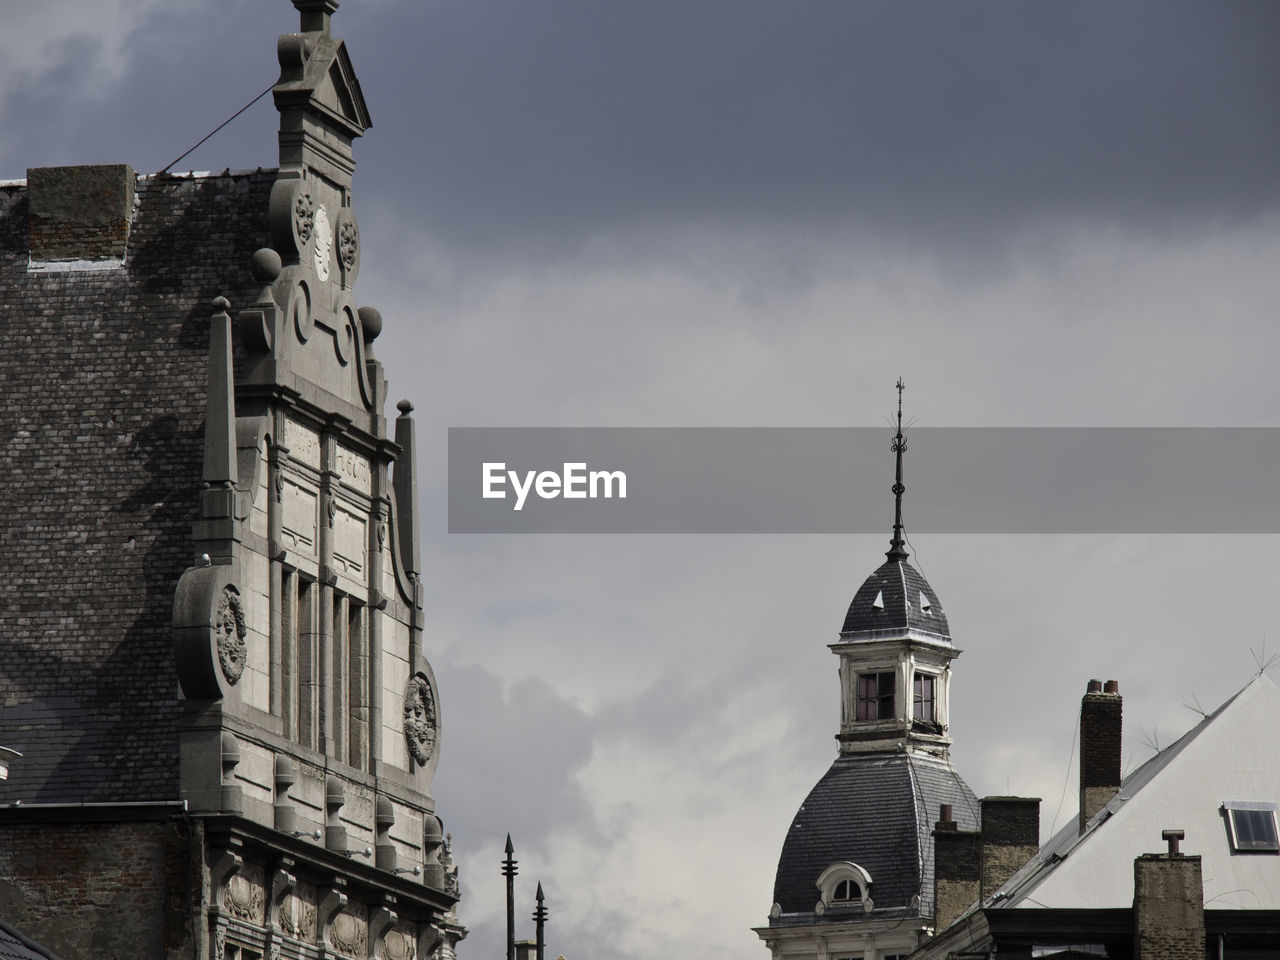 The city of antwerp in belgium